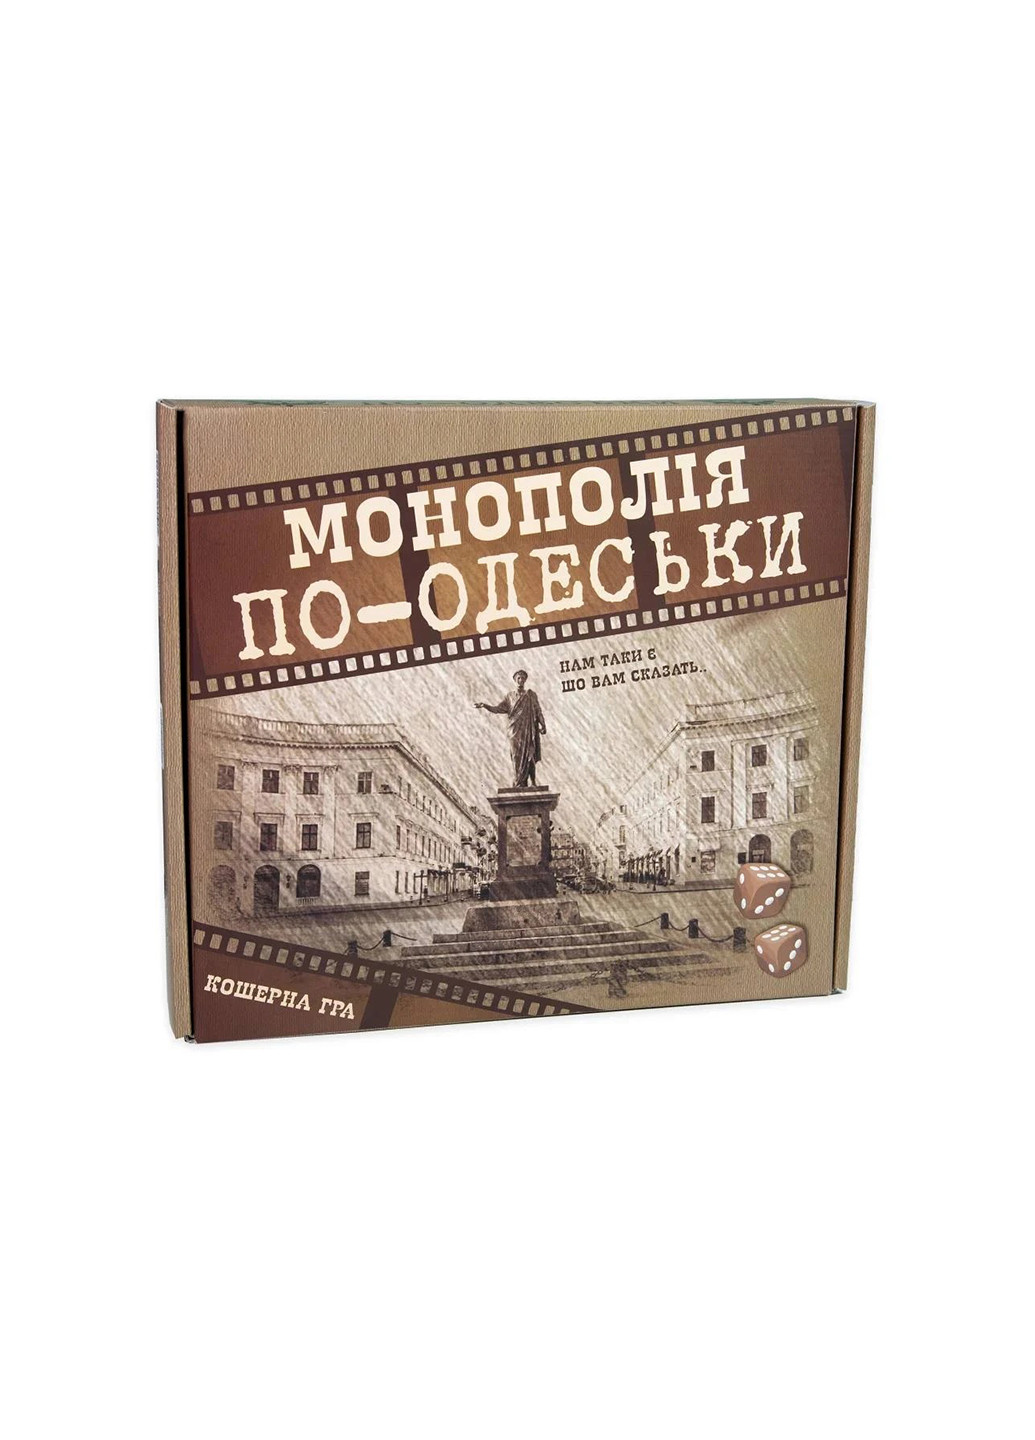 Настольная игра Монополия по-Одесски развлекательная экономическая на украинском языке 30318 Strateg (258301884)